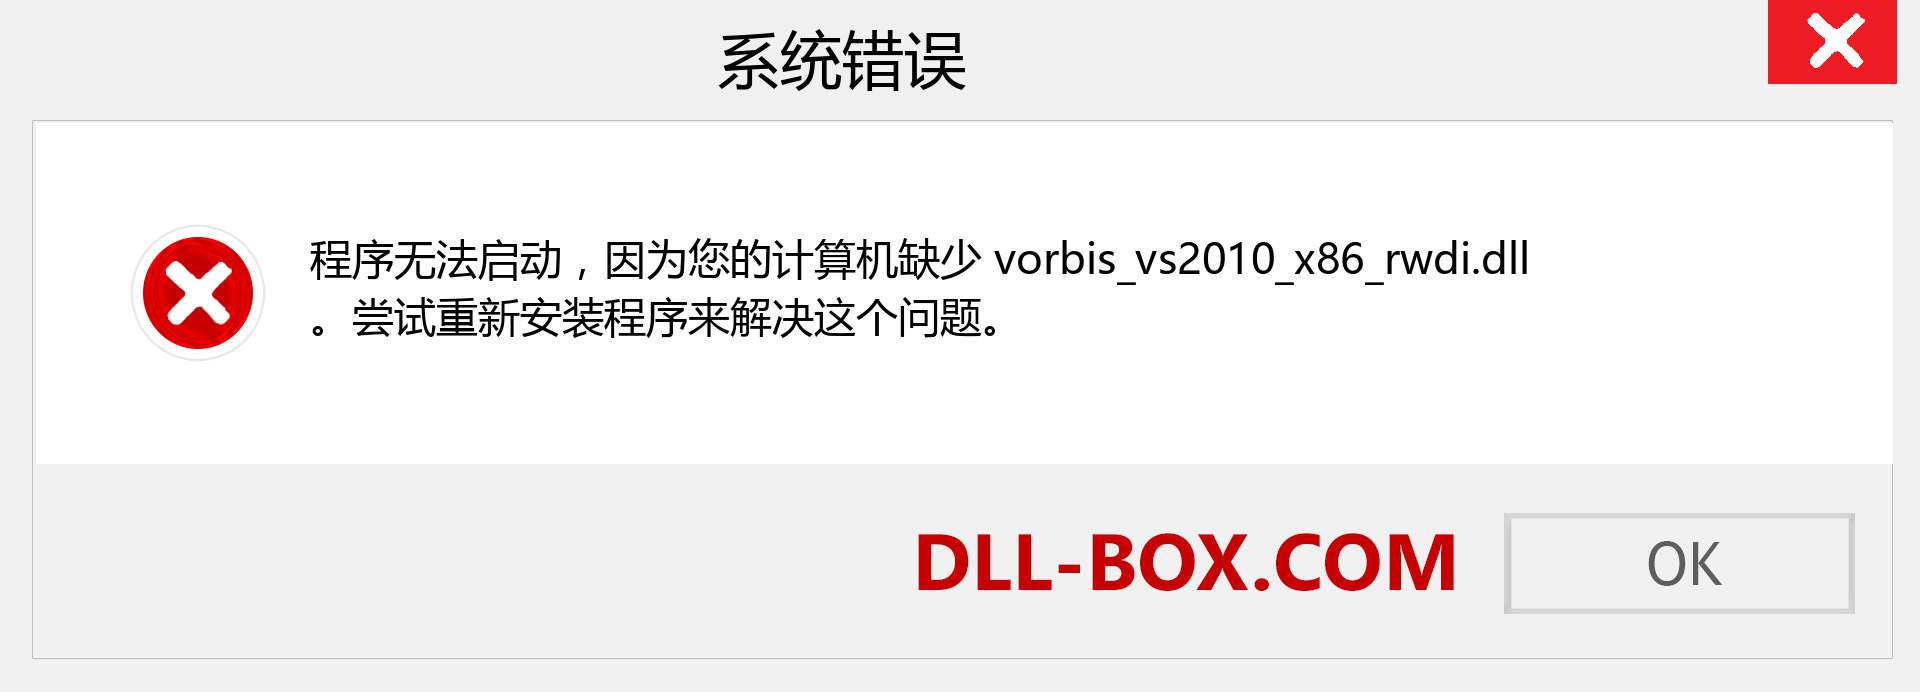 vorbis_vs2010_x86_rwdi.dll 文件丢失？。 适用于 Windows 7、8、10 的下载 - 修复 Windows、照片、图像上的 vorbis_vs2010_x86_rwdi dll 丢失错误